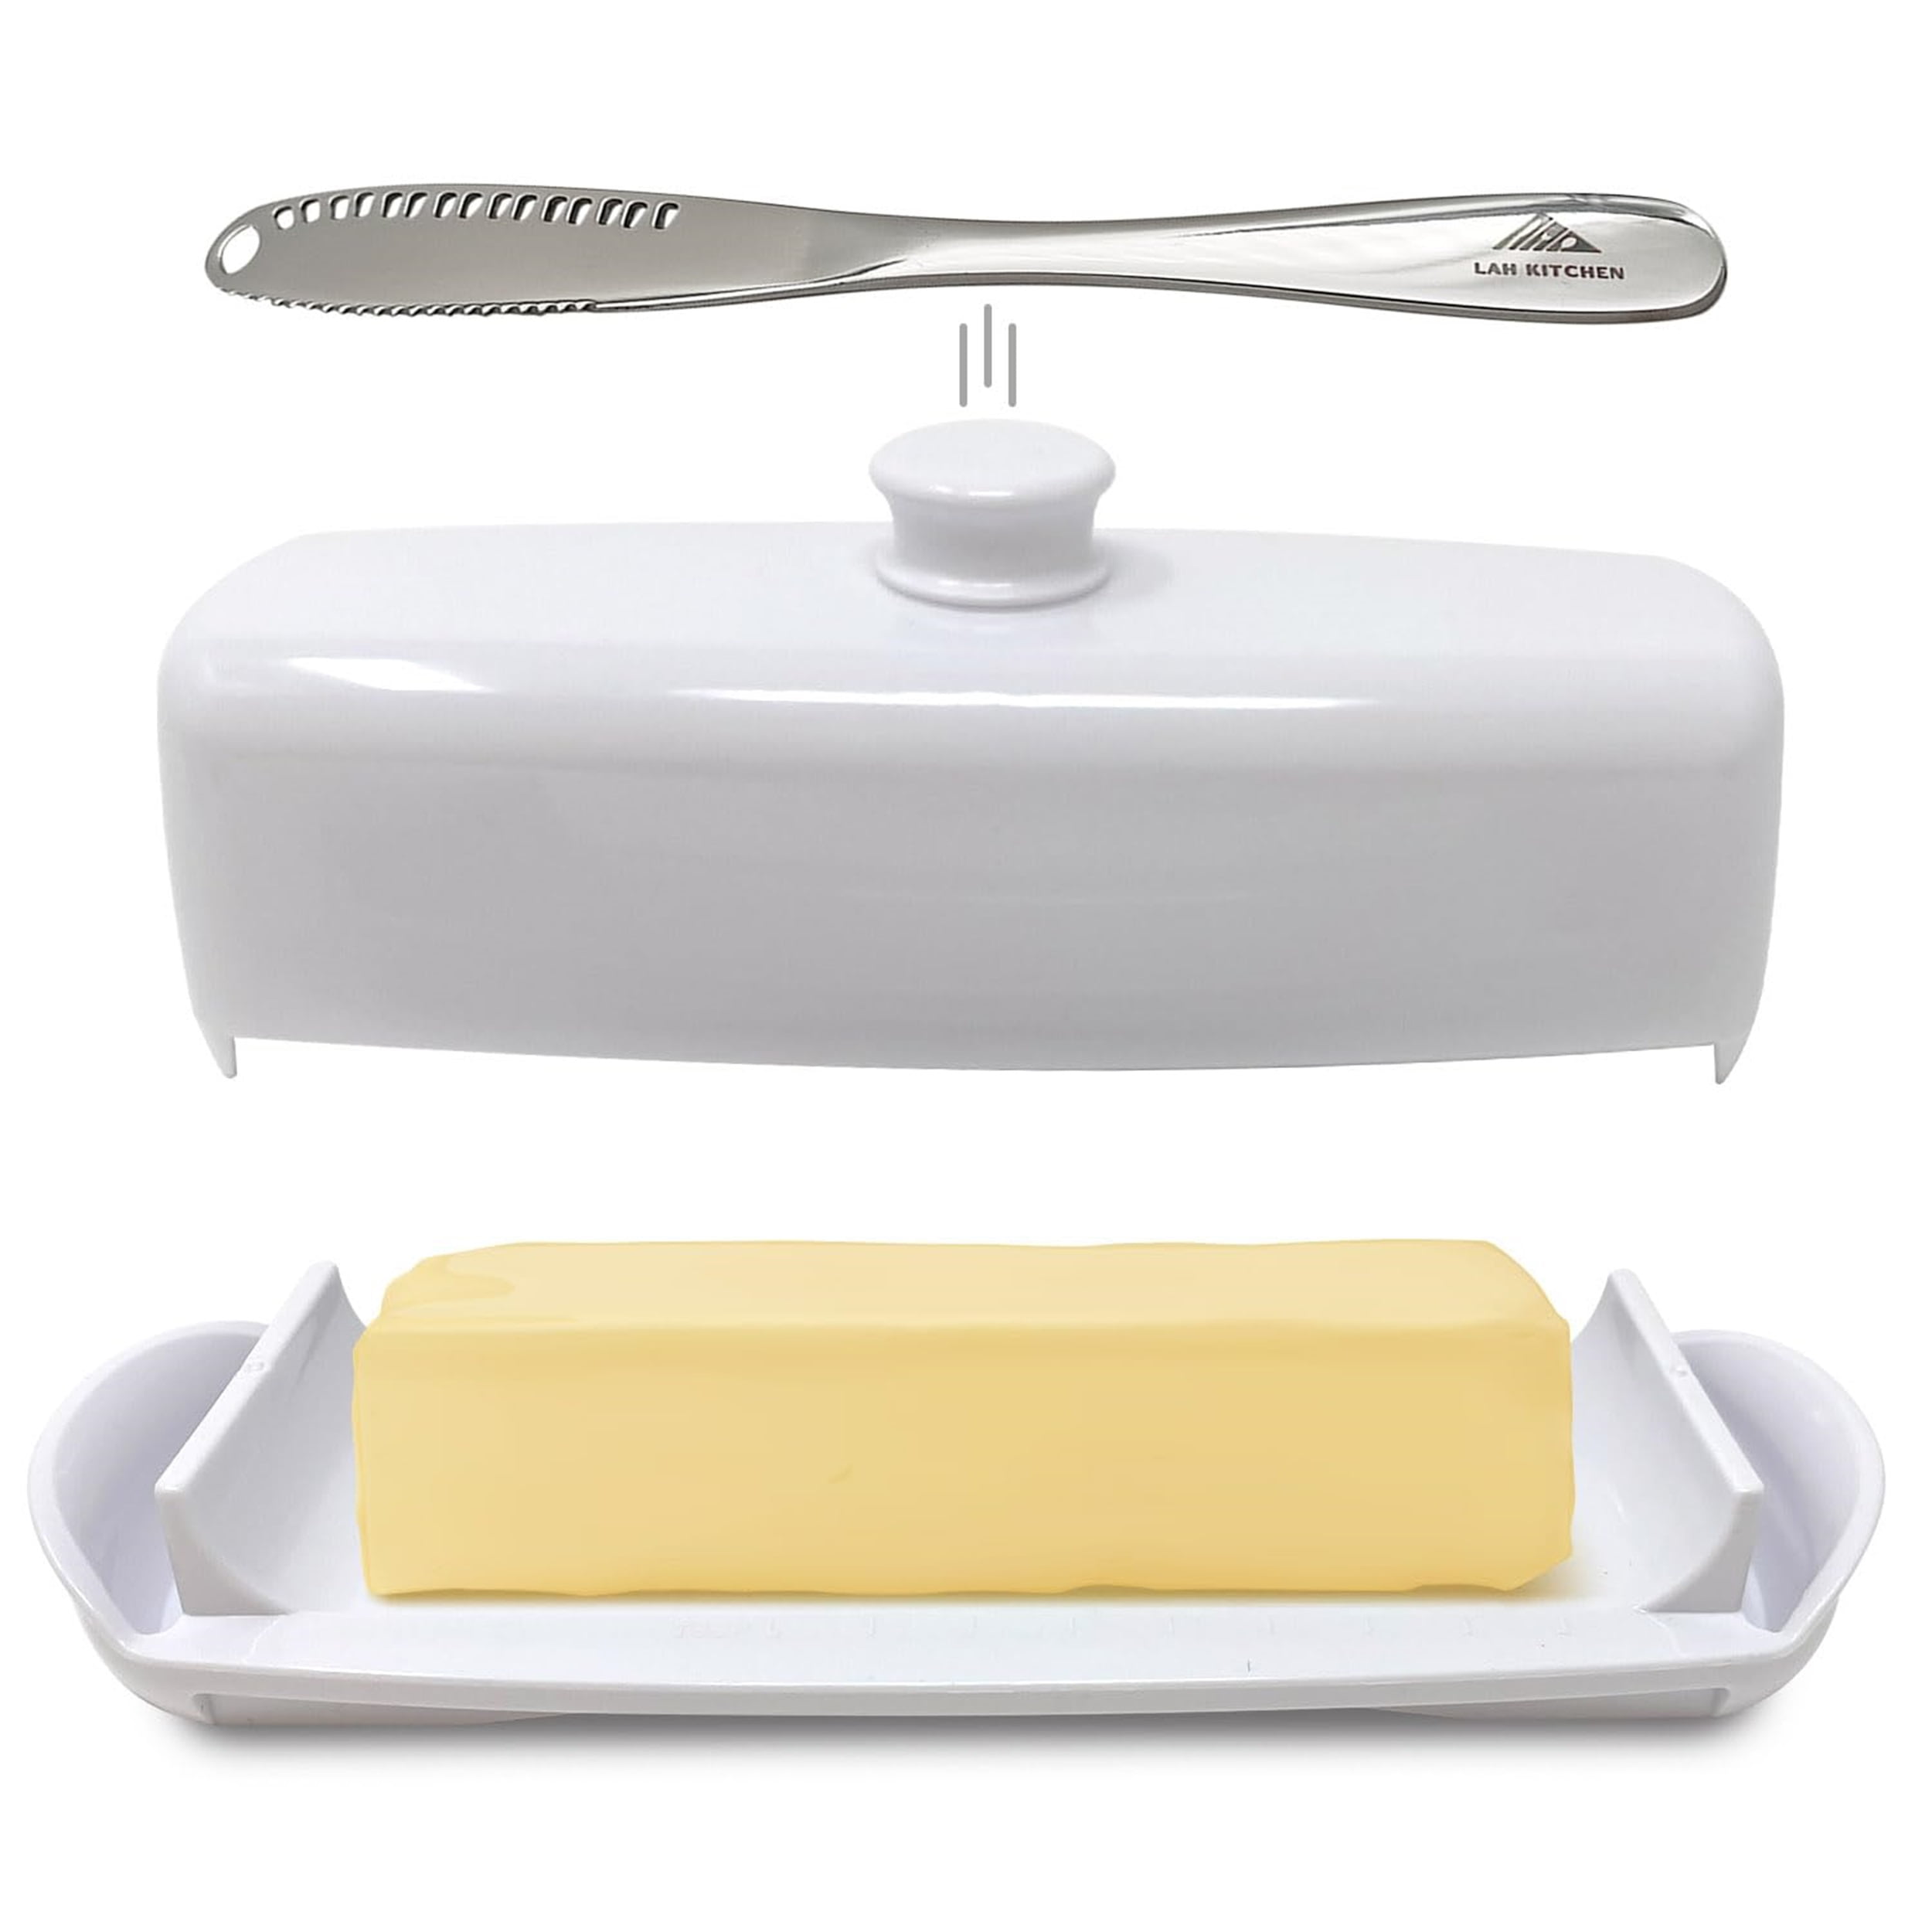 Chantal White Mini Butter Dish + Reviews